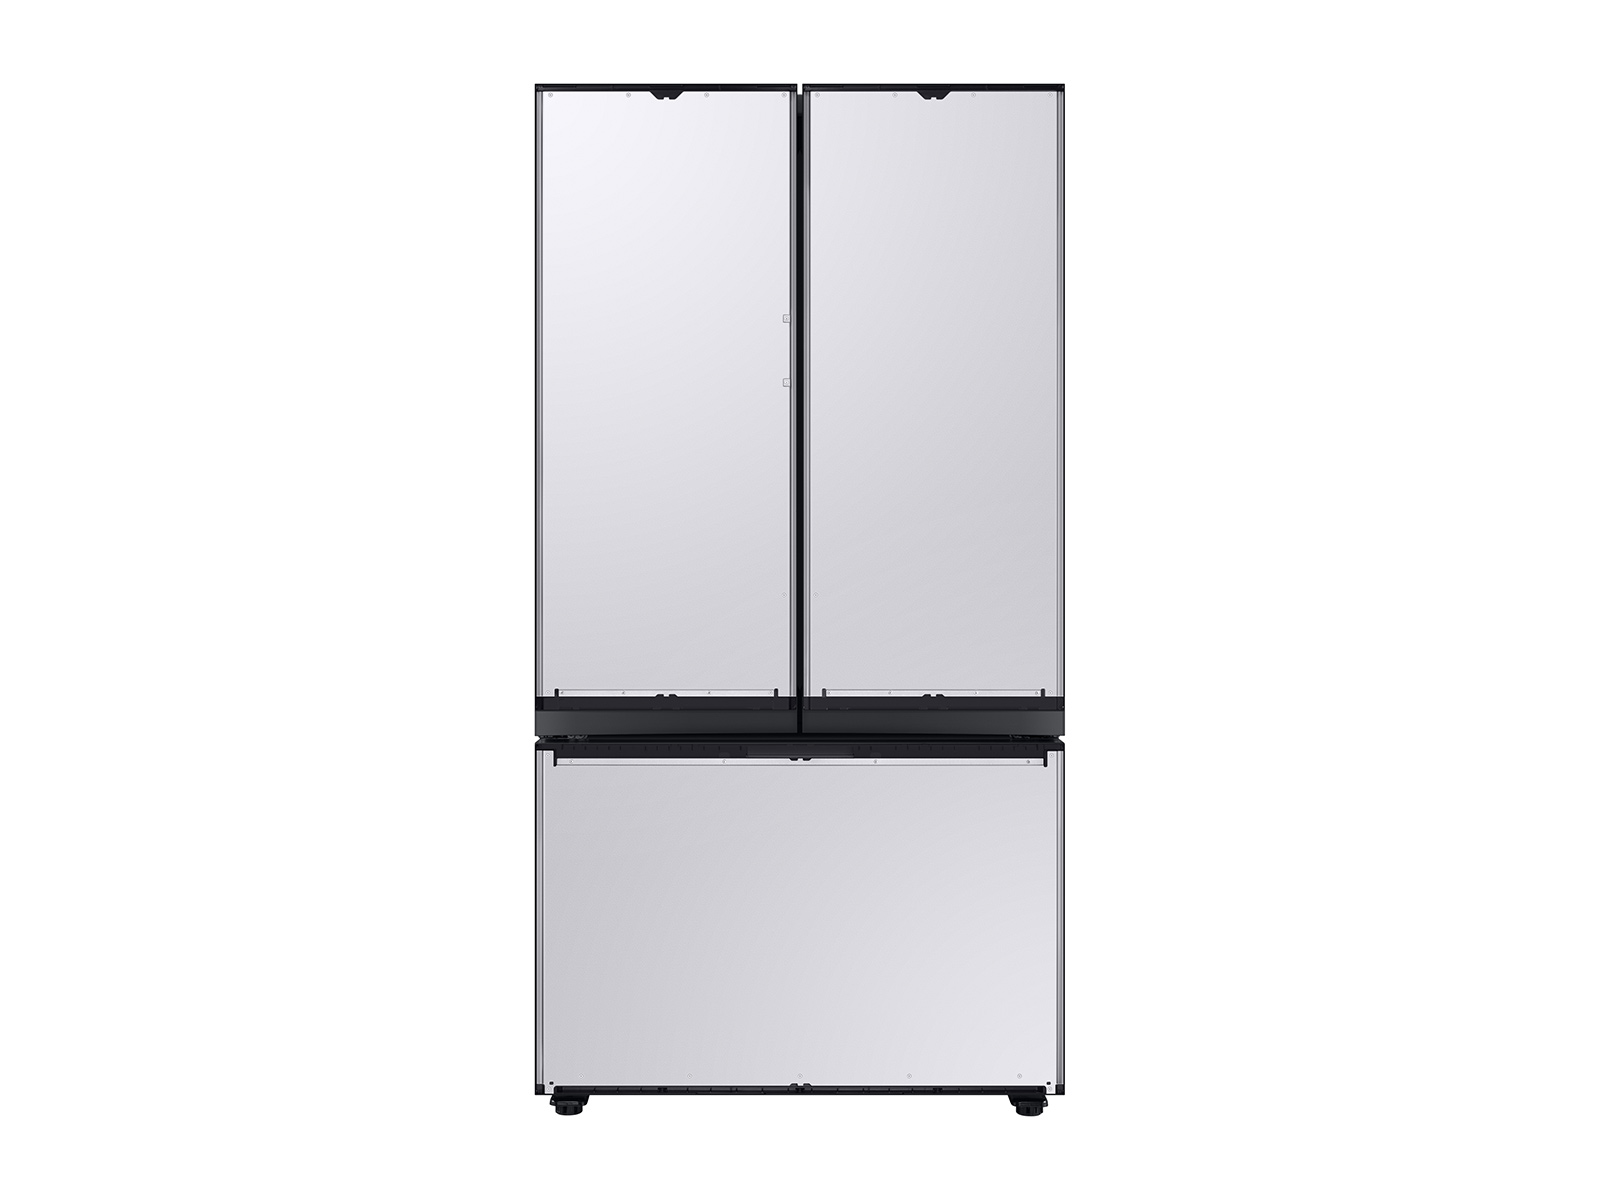 Bespoke 3-Door French Door Refrigerator (30 cu. ft.) with AutoFill Water Pitcher and Customizable Door Panel Colors